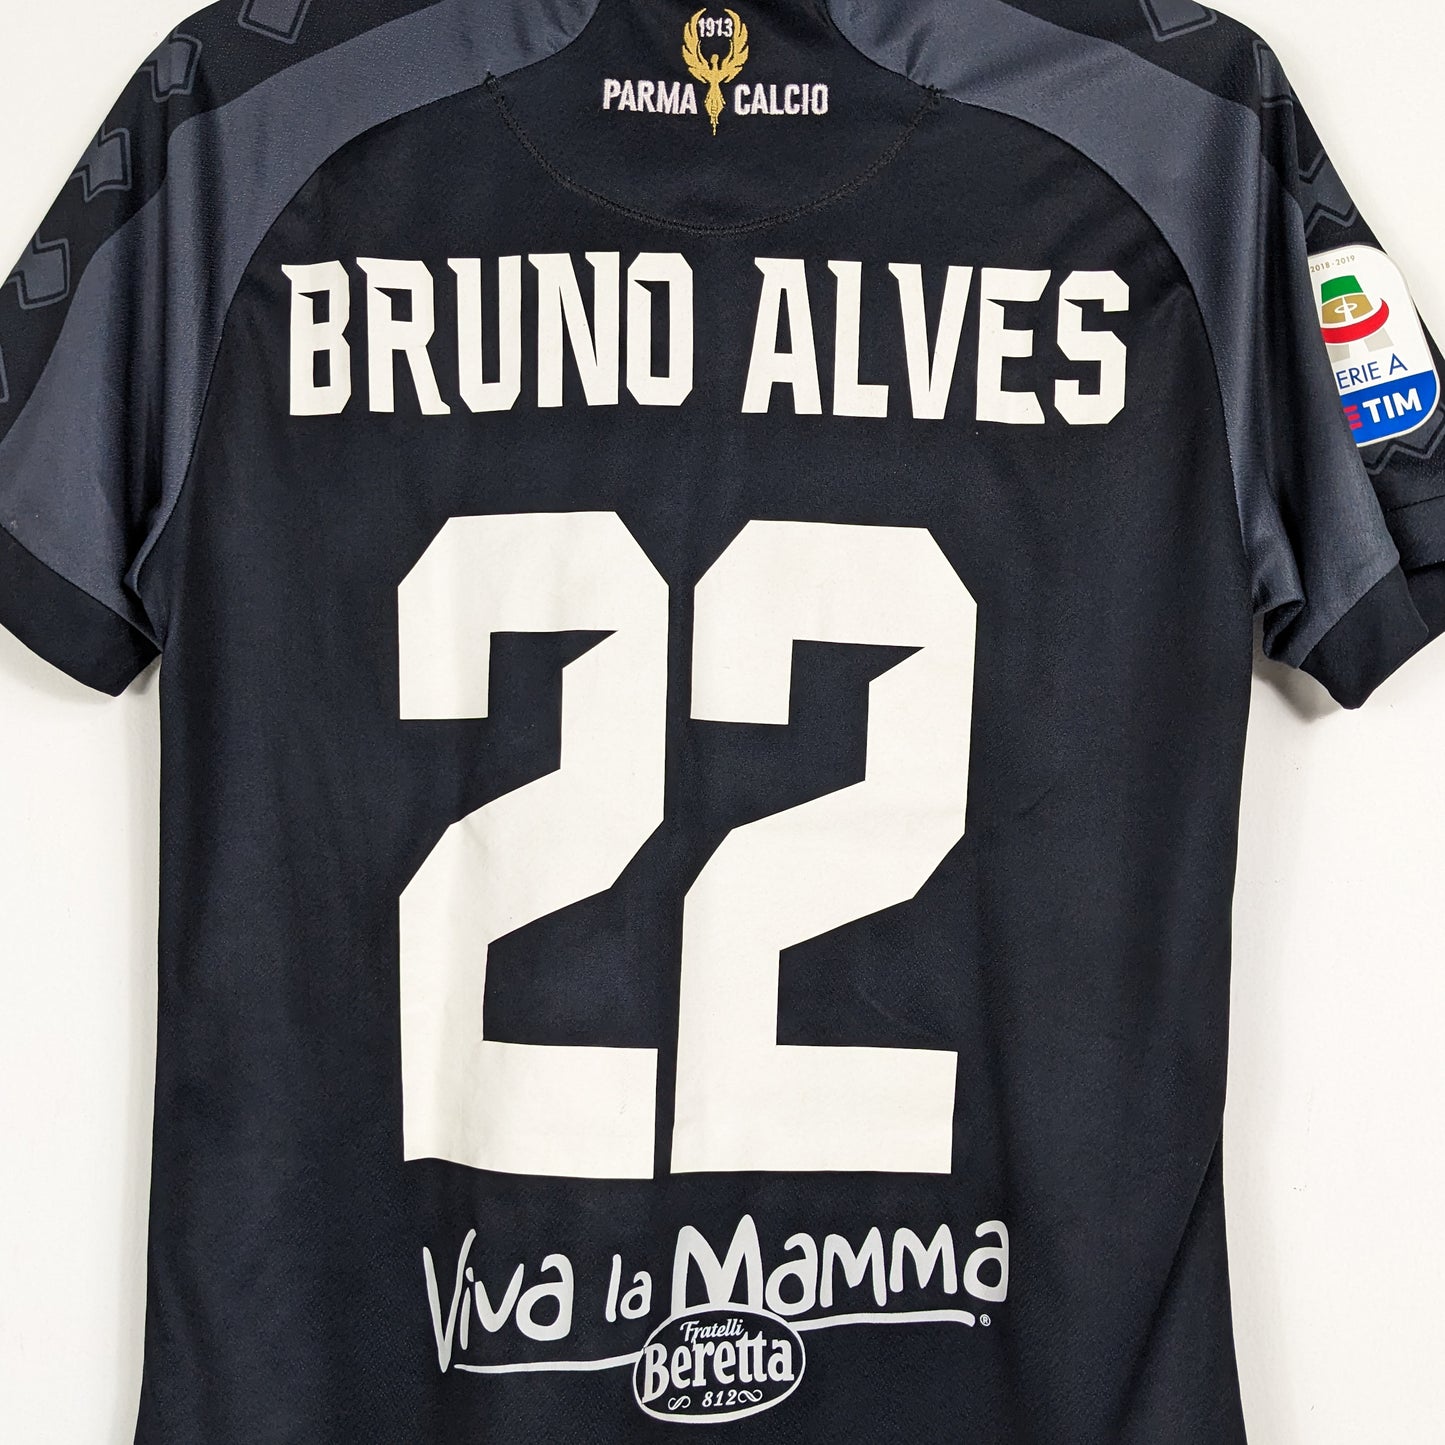 Authentic Parma 2018/2019 Third - Bruno Alves #22 Size M